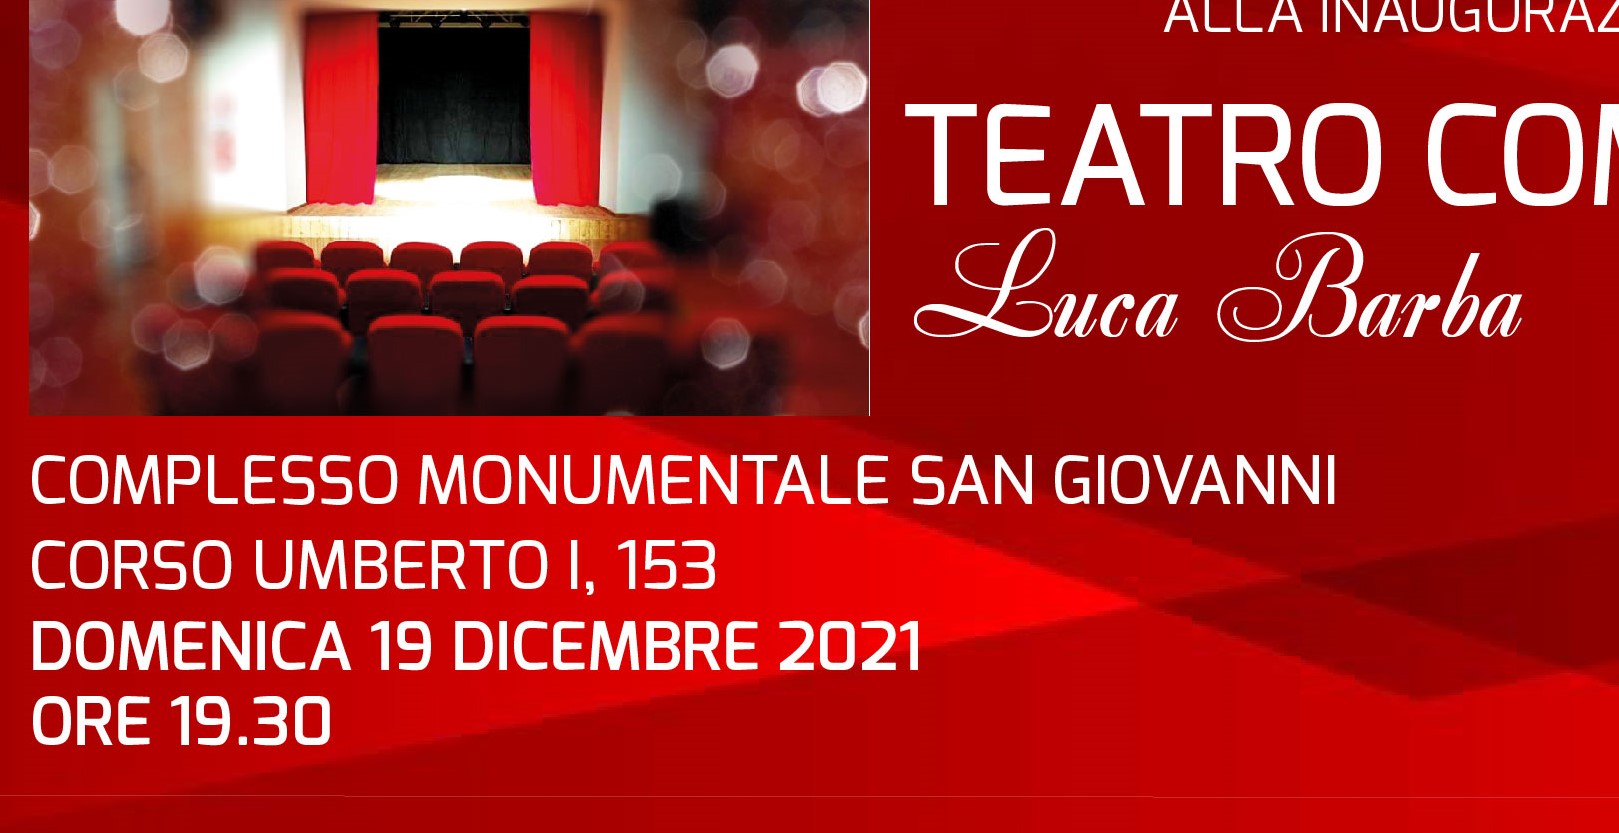 Cava de’ Tirreni: inaugurazione rinnovato Teatro Comunale “Luca Barba”